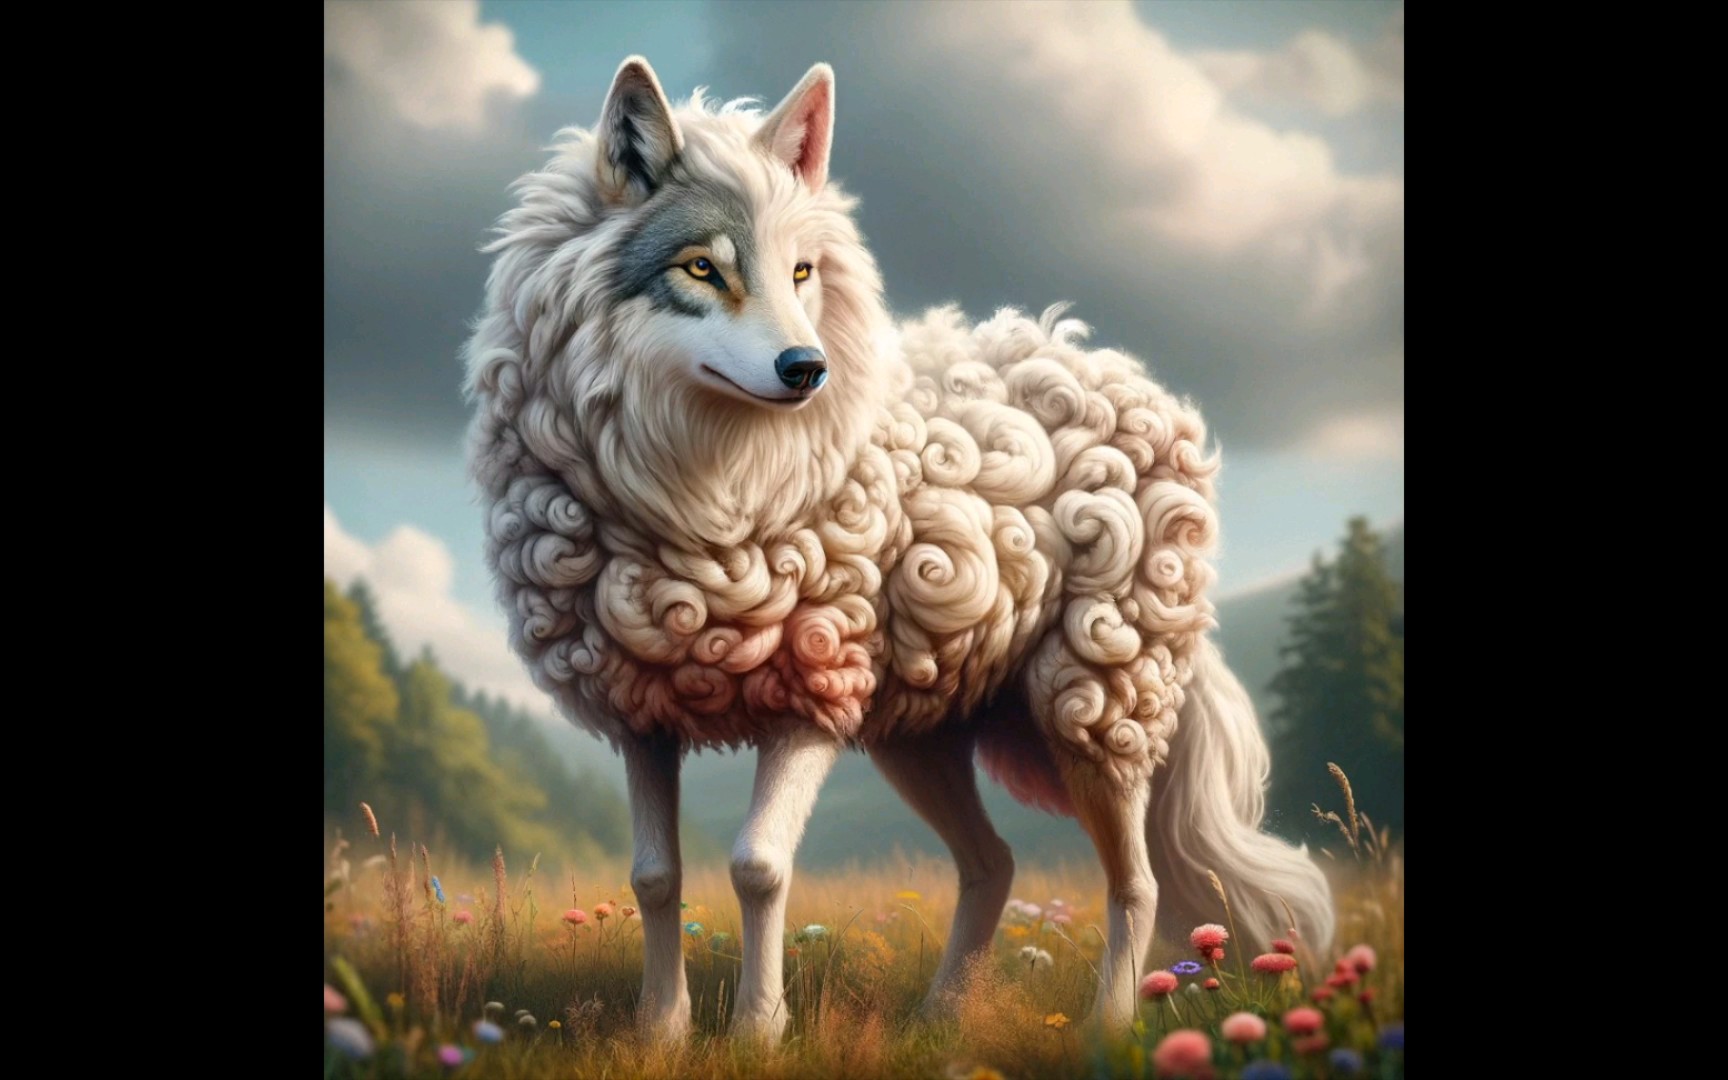 狼和羊的爱情图片图片